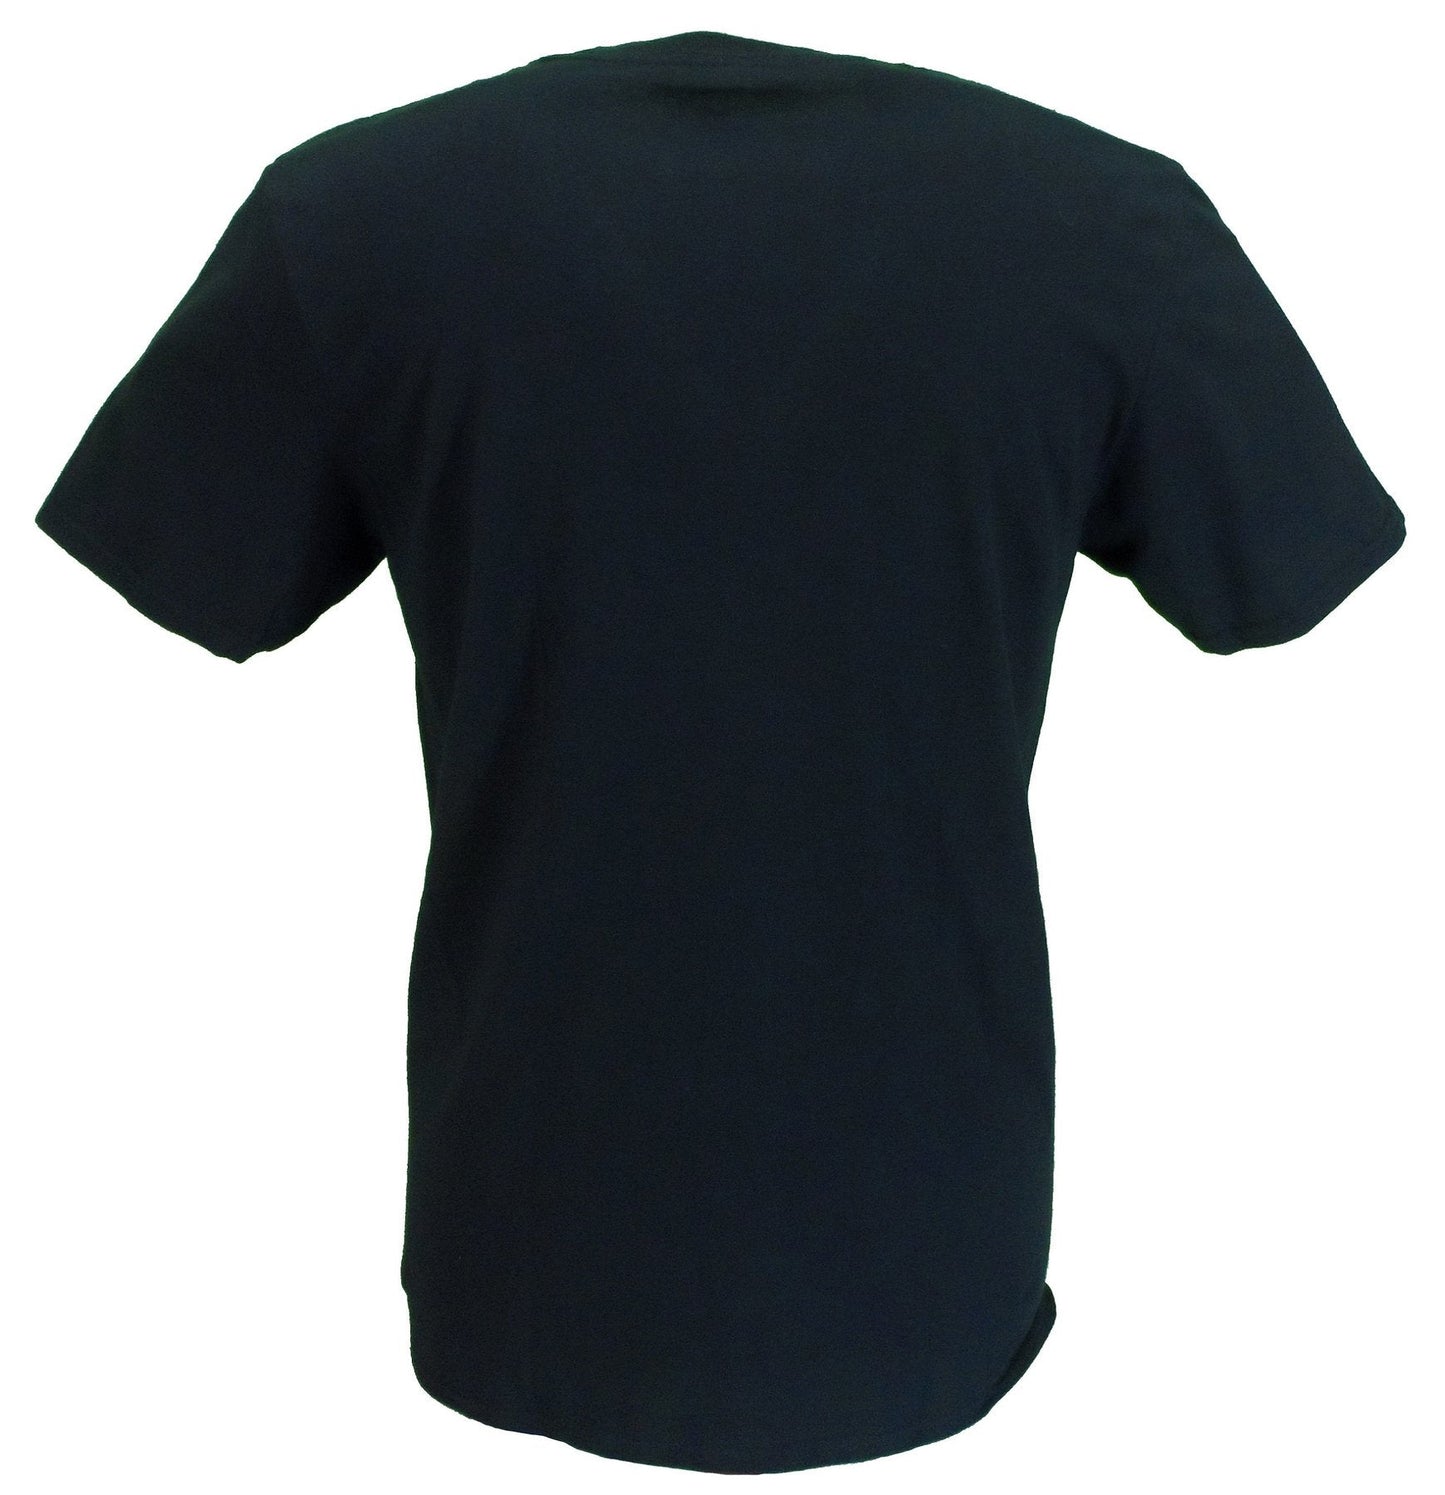 T-shirt officiel noir pour hommes t rex bolan dandy aux enfers